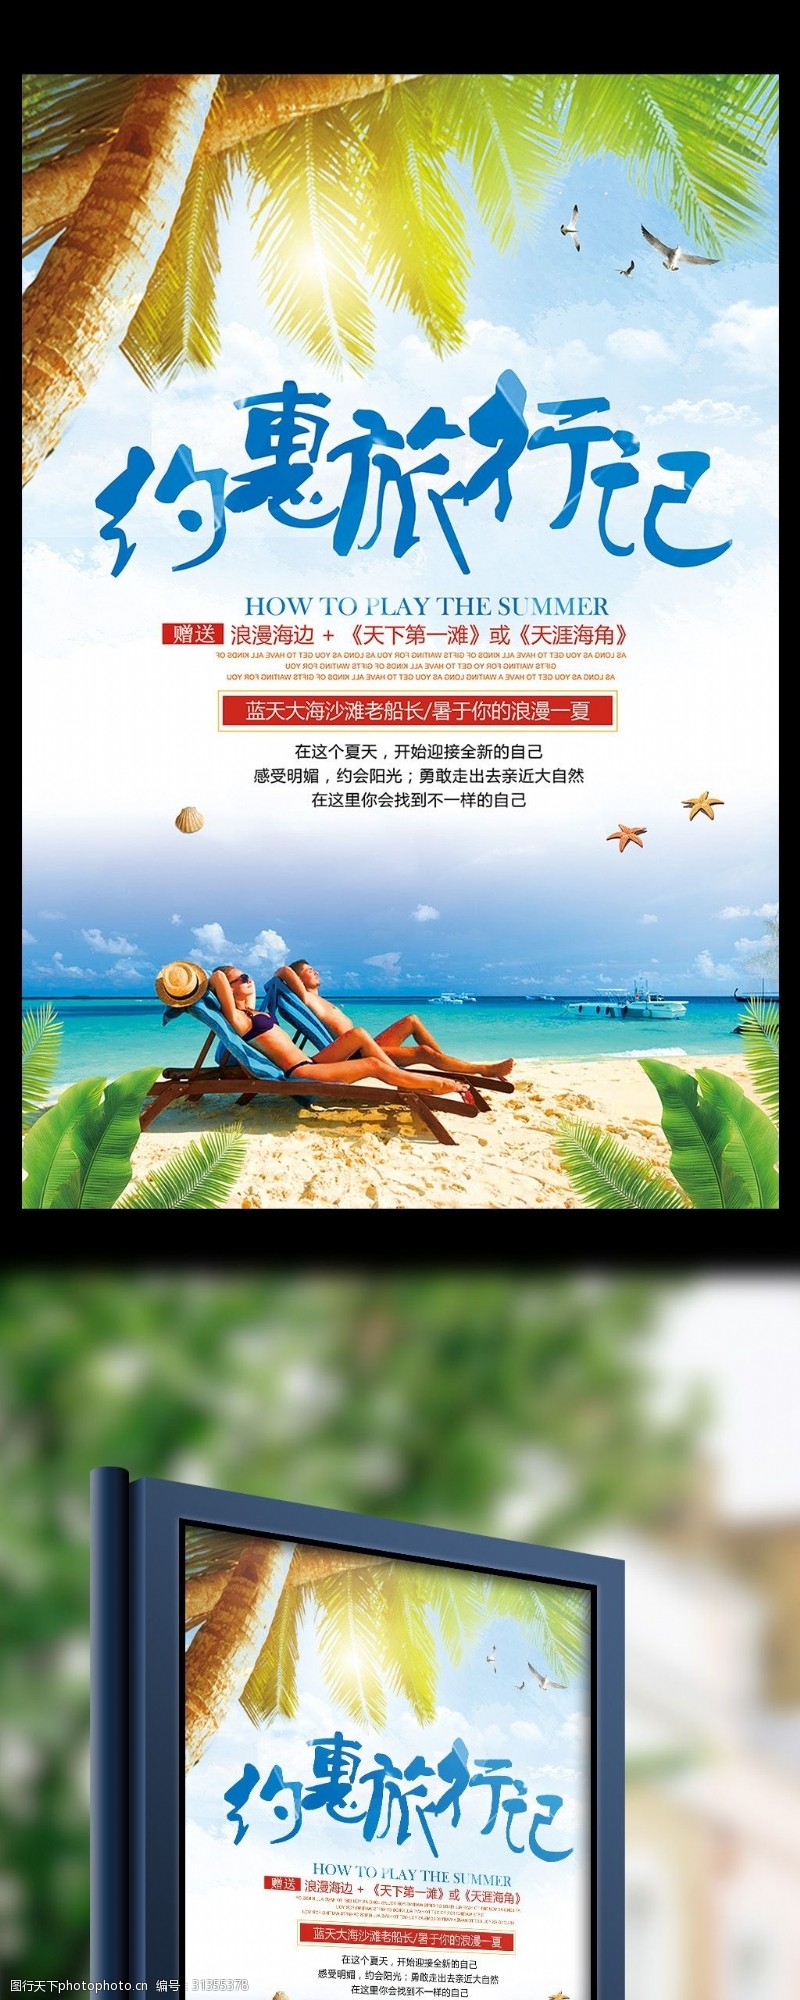 毕业旅行约惠旅行记旅游宣传海报